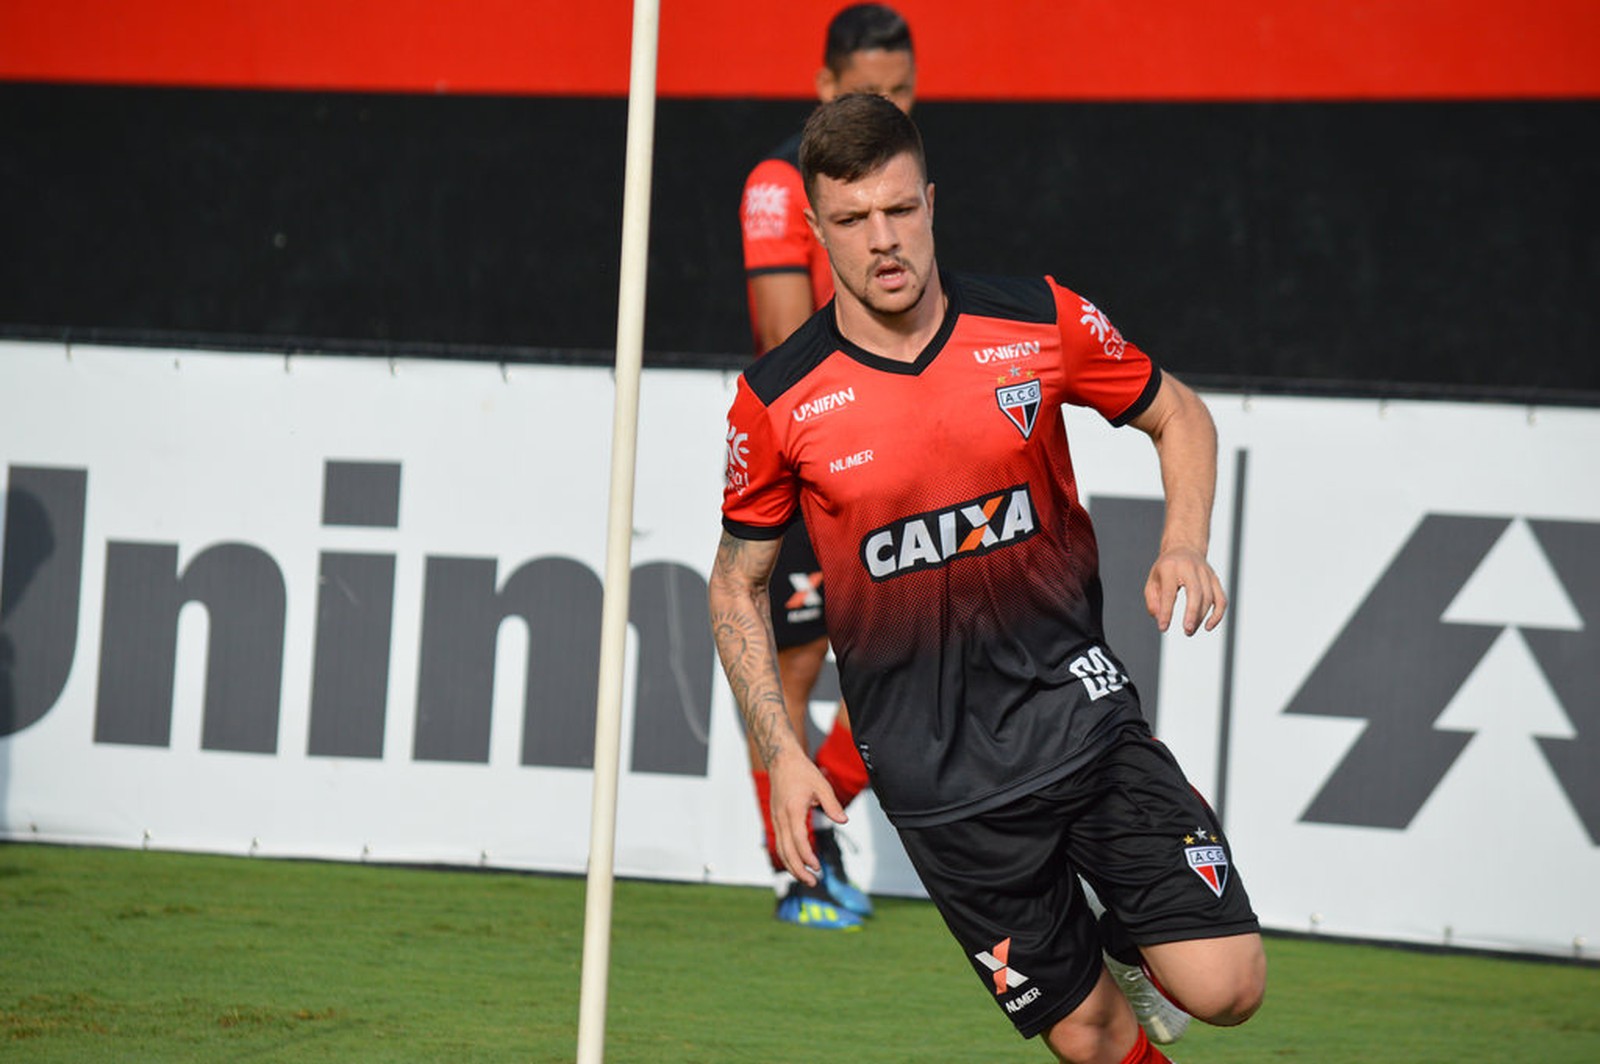 13º - Para fechar a sequência dos lembrados com dois pontos, Renato Kayzer (24 anos), do Atlético-GO e depois Athletico-PR. No Brasileirão, atuou em 13 jogos e tem cinco gols.